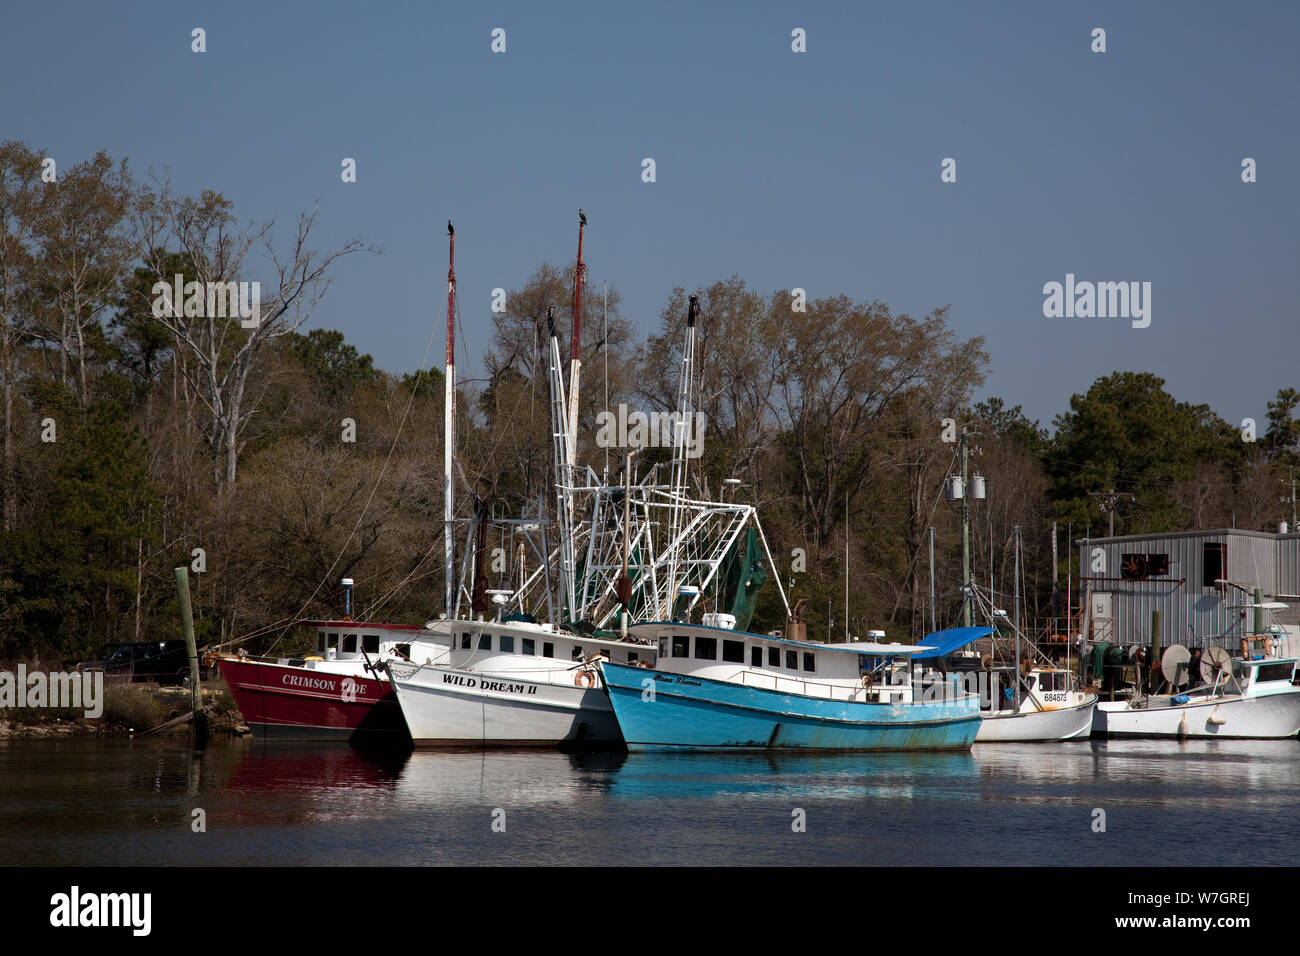 Bayou La Batre, Alabama, est un village de pêcheurs avec un port de transformation des fruits de mer pour les bateaux de pêche et bateaux de crevettes Banque D'Images